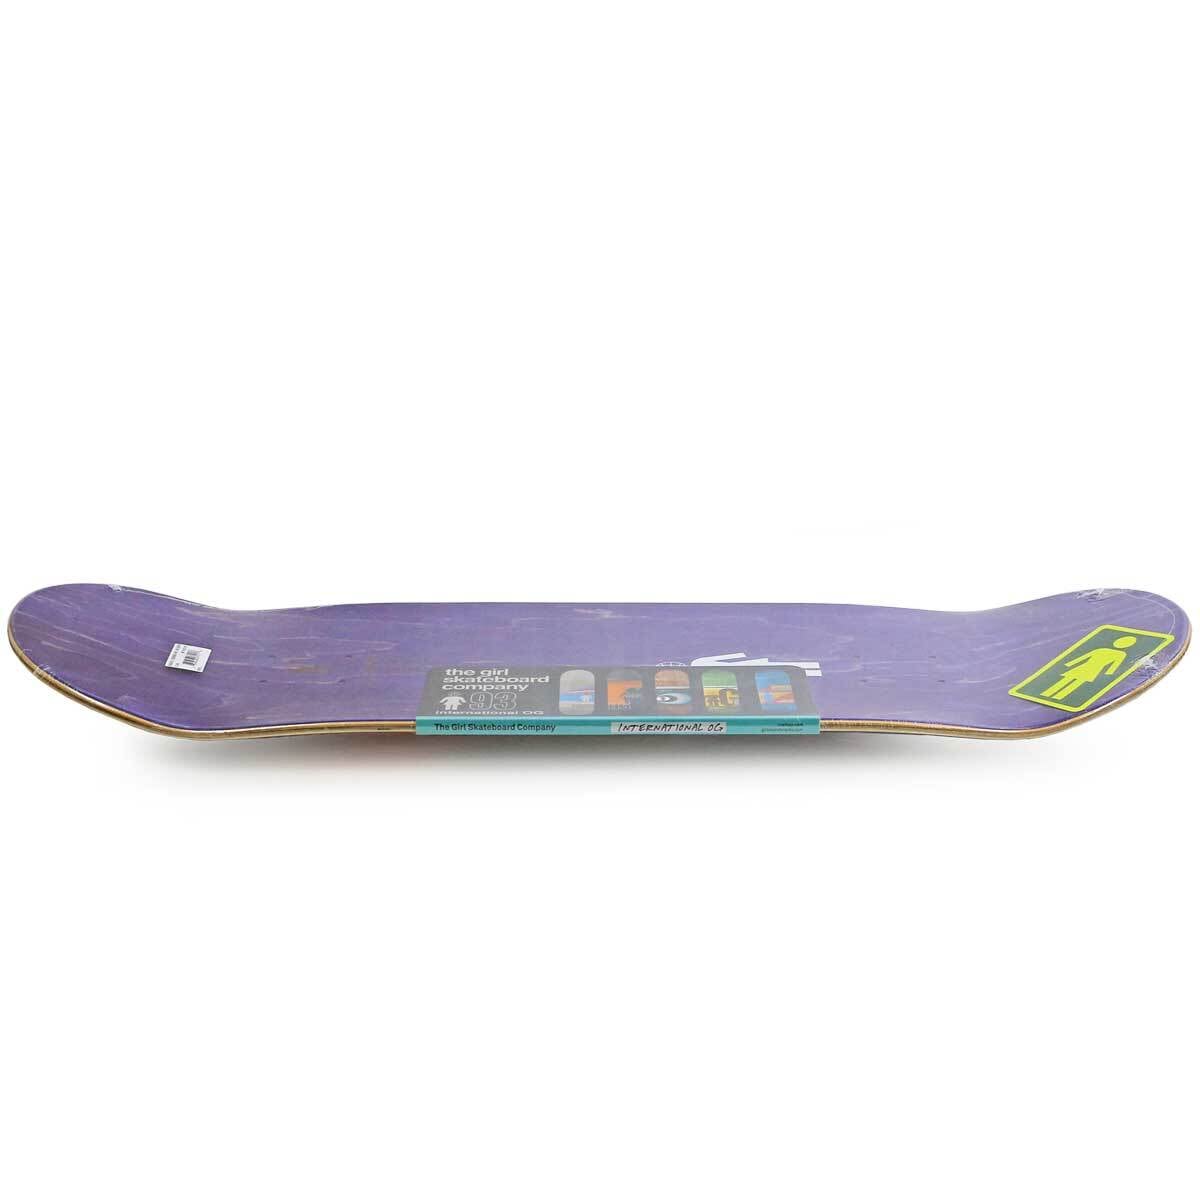 スケボー デッキ 8.2インチ GIRL SKATEBOARDS - スケートボード